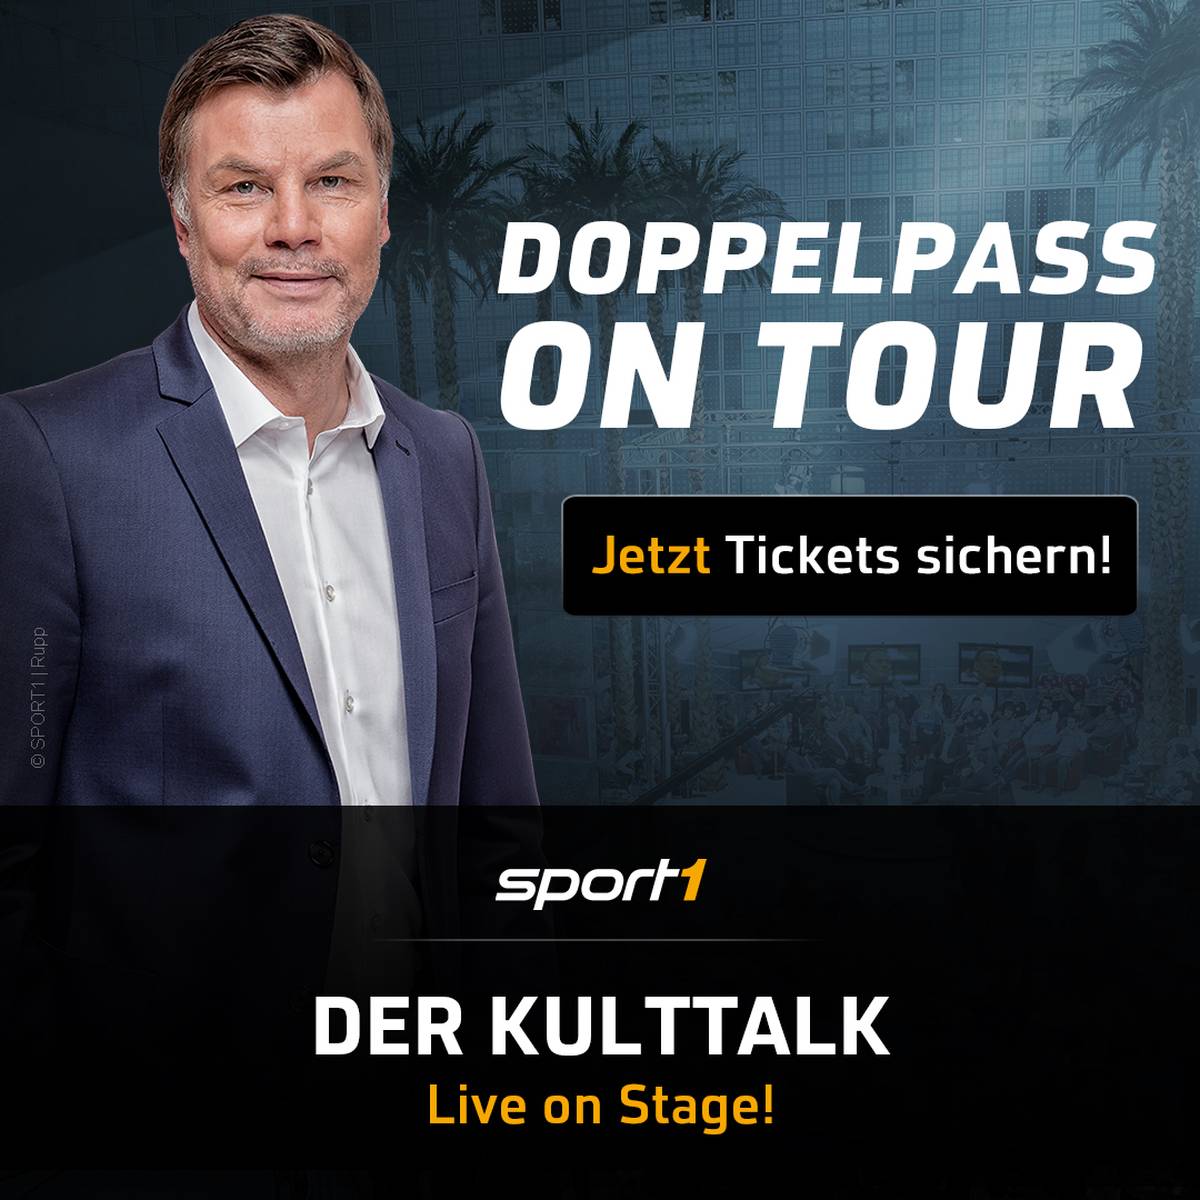 Neues Bühnenprogramm „Doppelpass on Tour“ Moderator Thomas Helmer und prominente Gäste präsentieren Deutschlands Fußball-Talk Nr